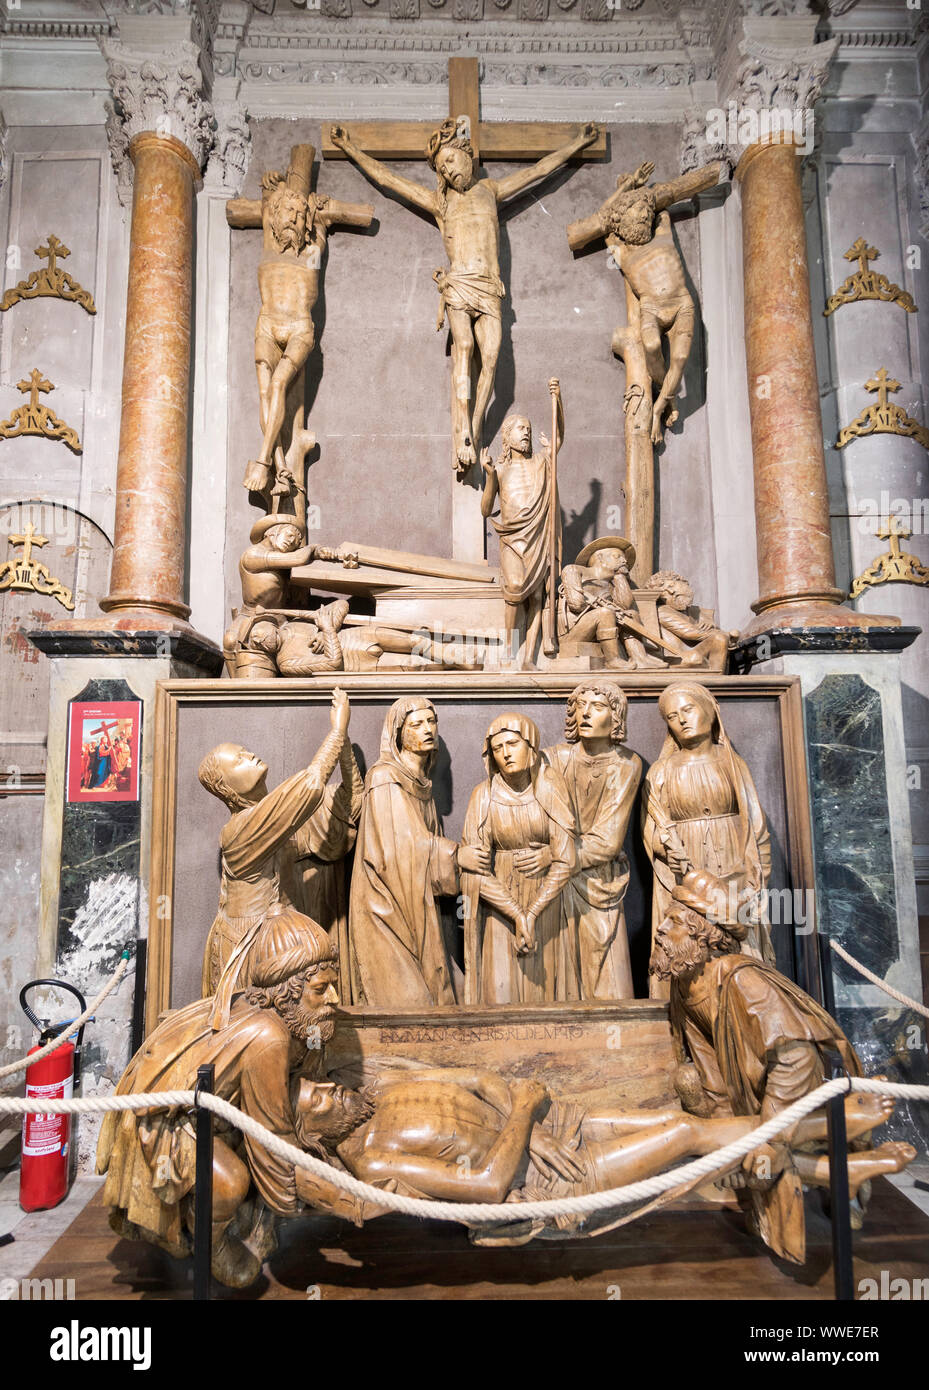 C16 scultura in legno raffigurante la Crocifissione, e tumulazione risurrezione nell'Église Notre-Dame-de-lAssomption, Puget-Théniers, Francia, Europa Foto Stock